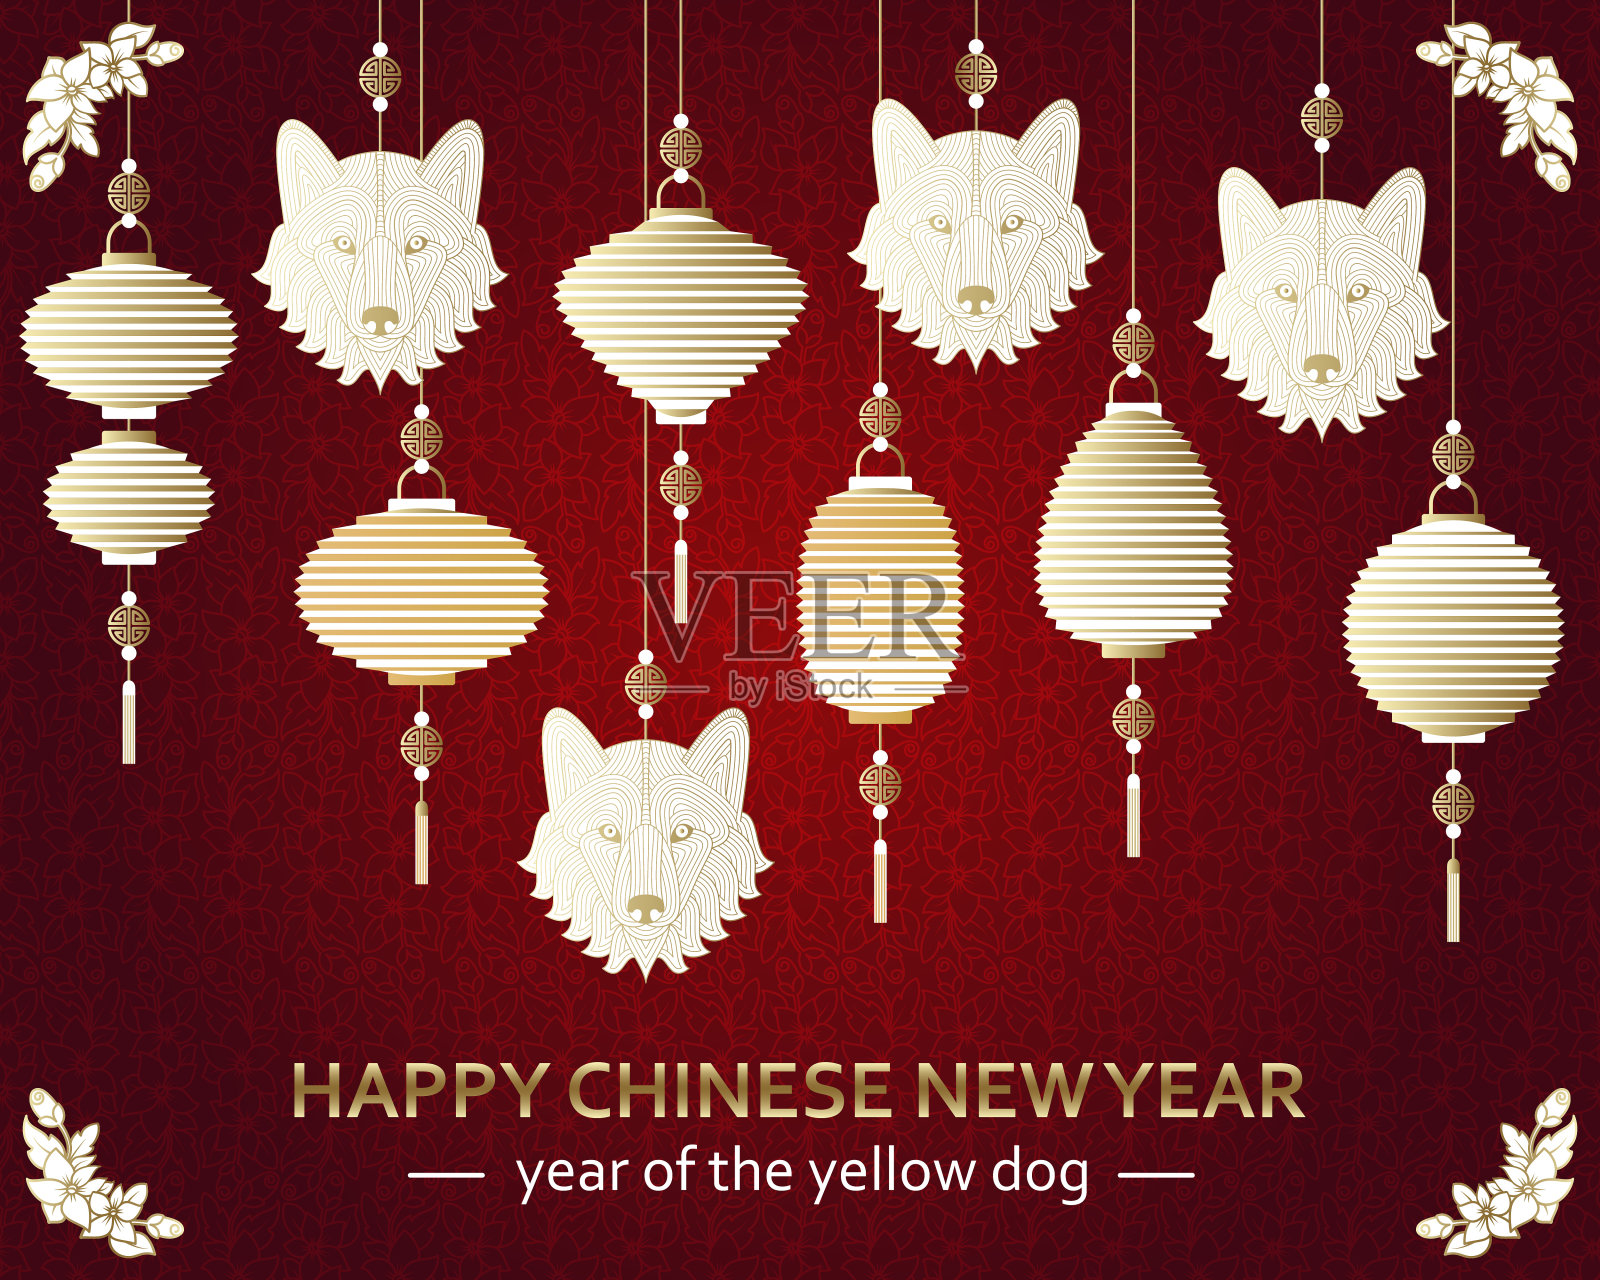 中国新年的背景与创意风格的狗插画图片素材